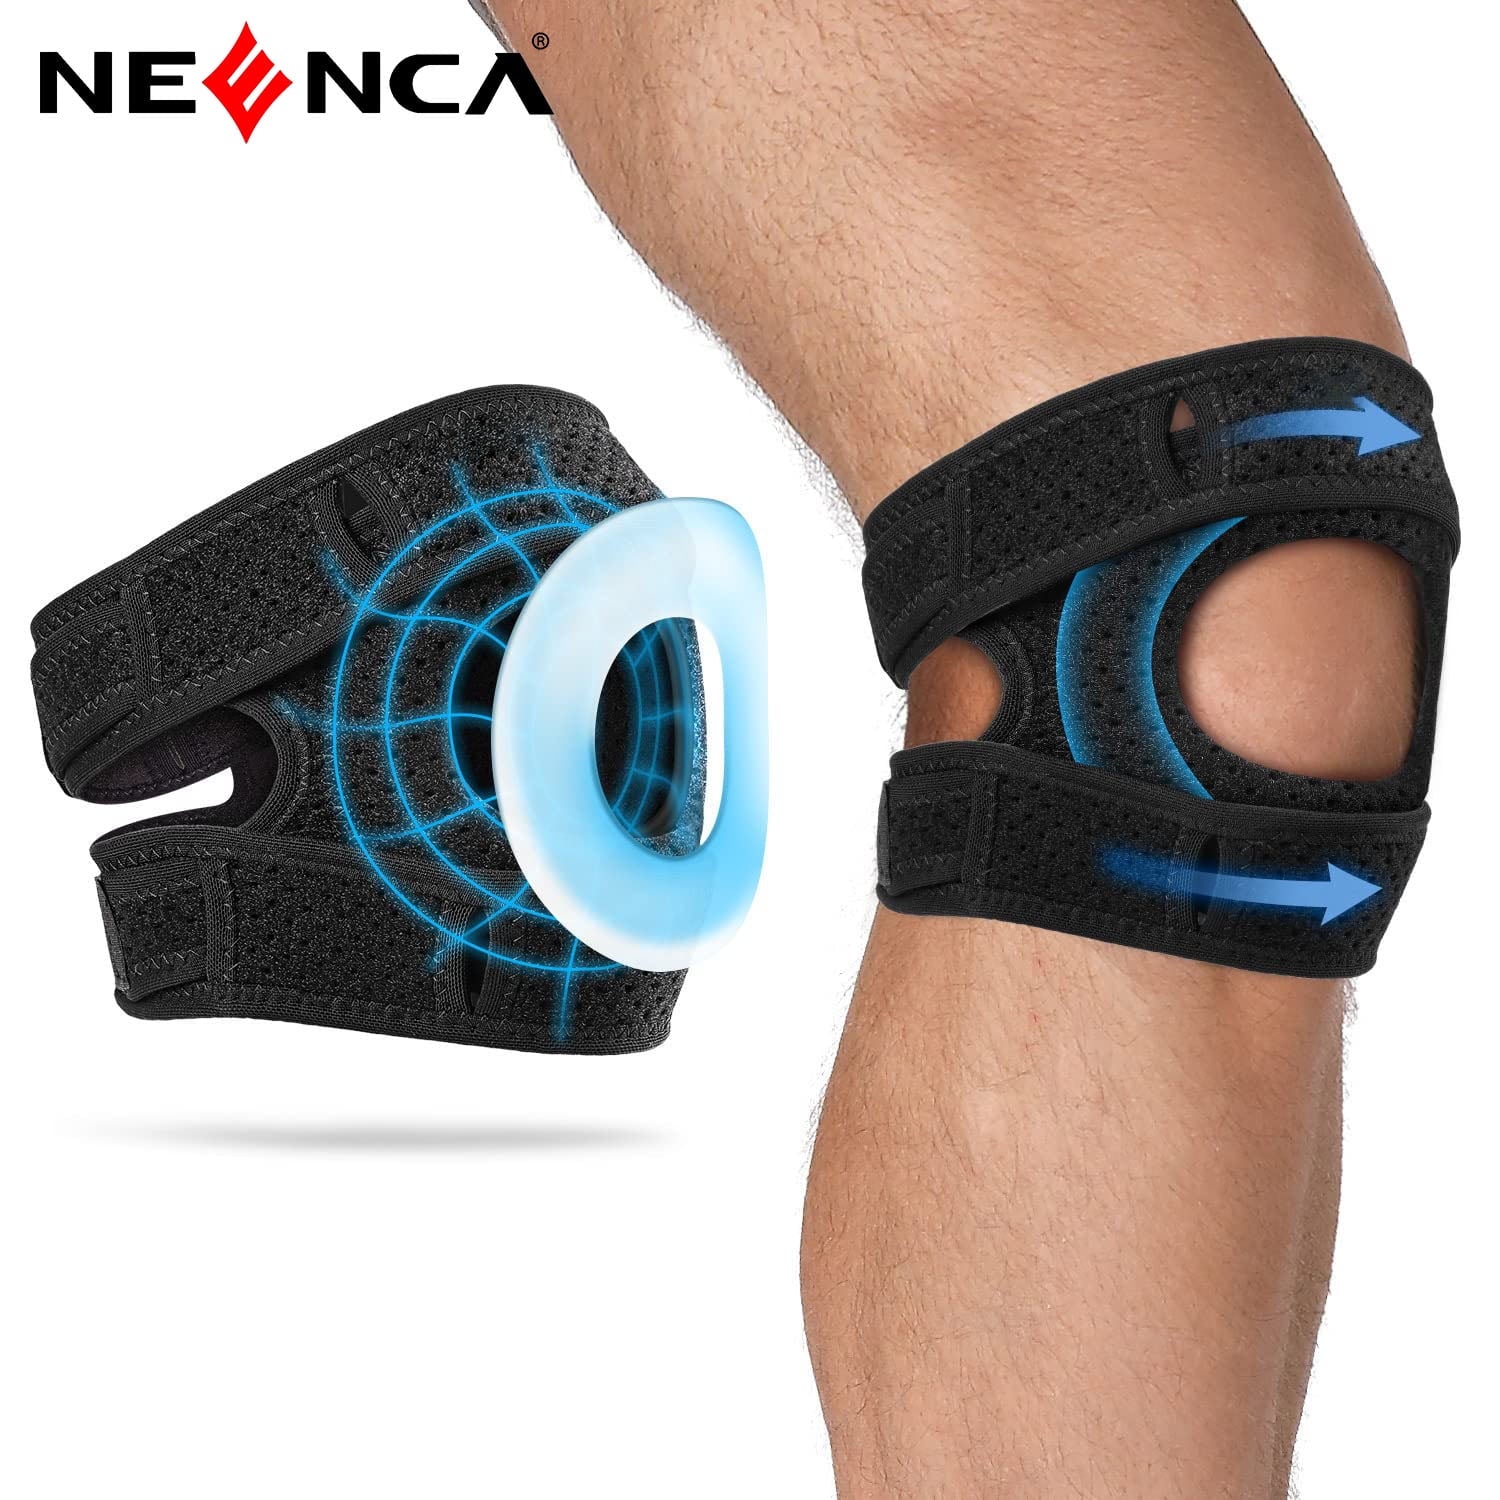  NEENCA Knee Braces for Knee Pain- 2 Pack Knee Sleeves